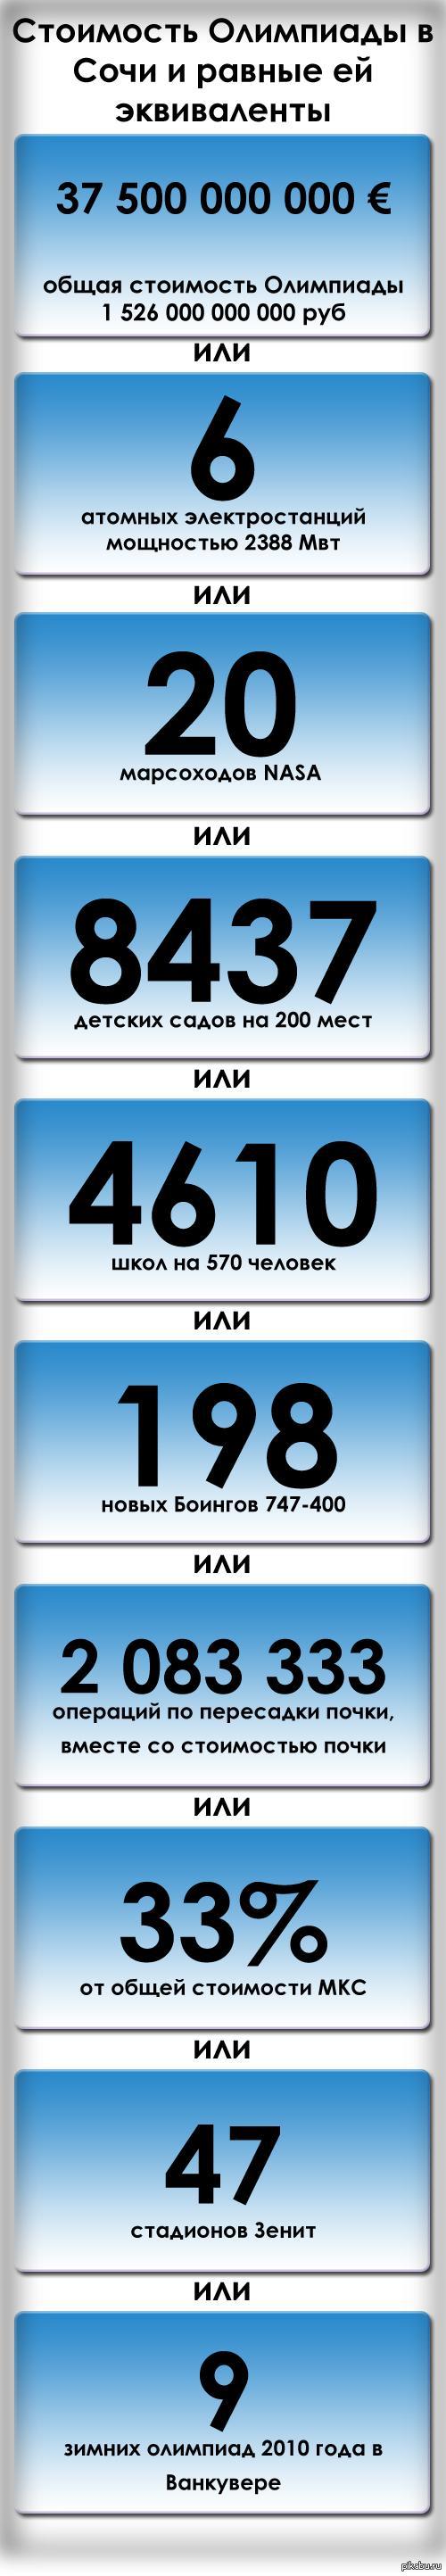               2012 .    - http://www.vz.ru/economy/2013/2/1/618531.html